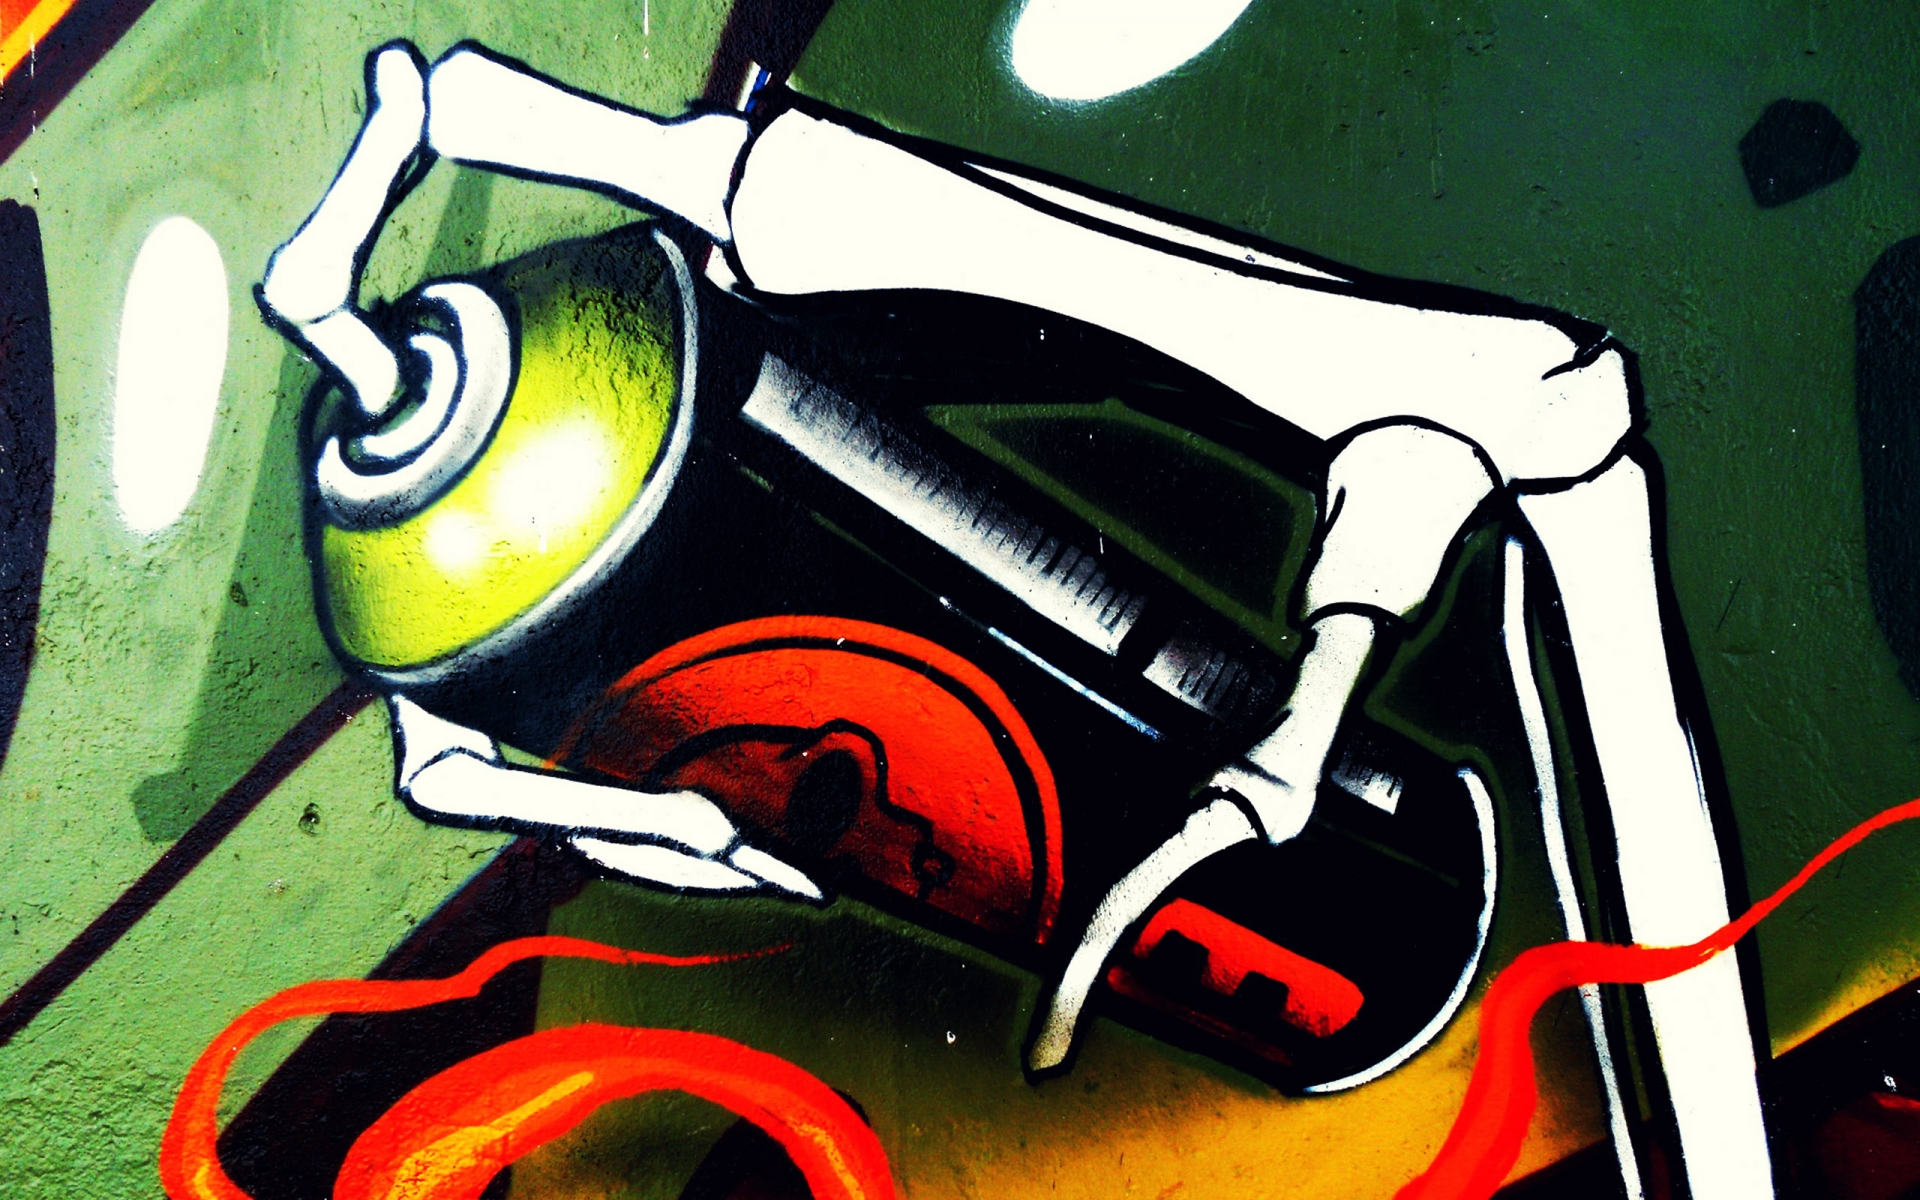 Graffiti Wallpaper Image For Laptop Amp Desktops